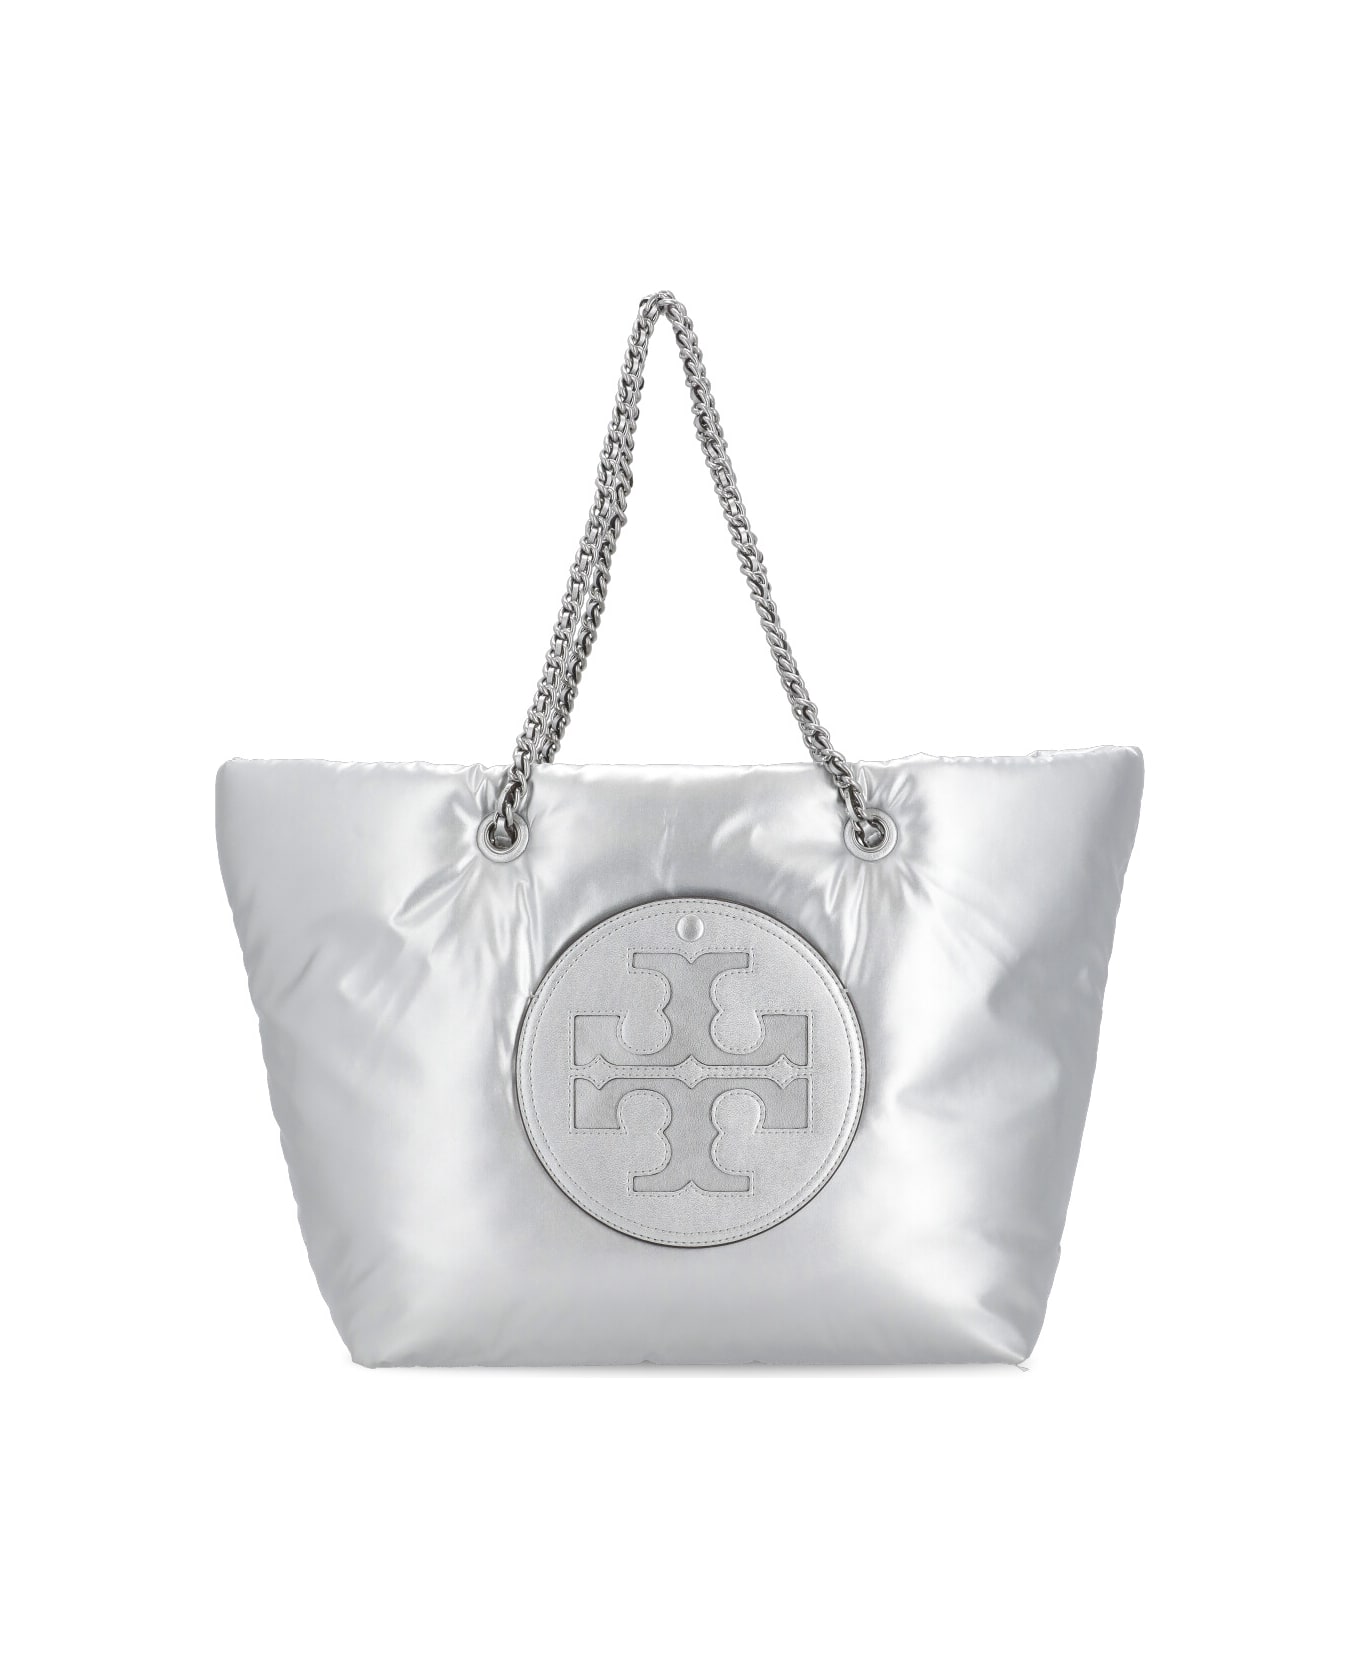 Tory Burch Ella Shopping Bag - Silver